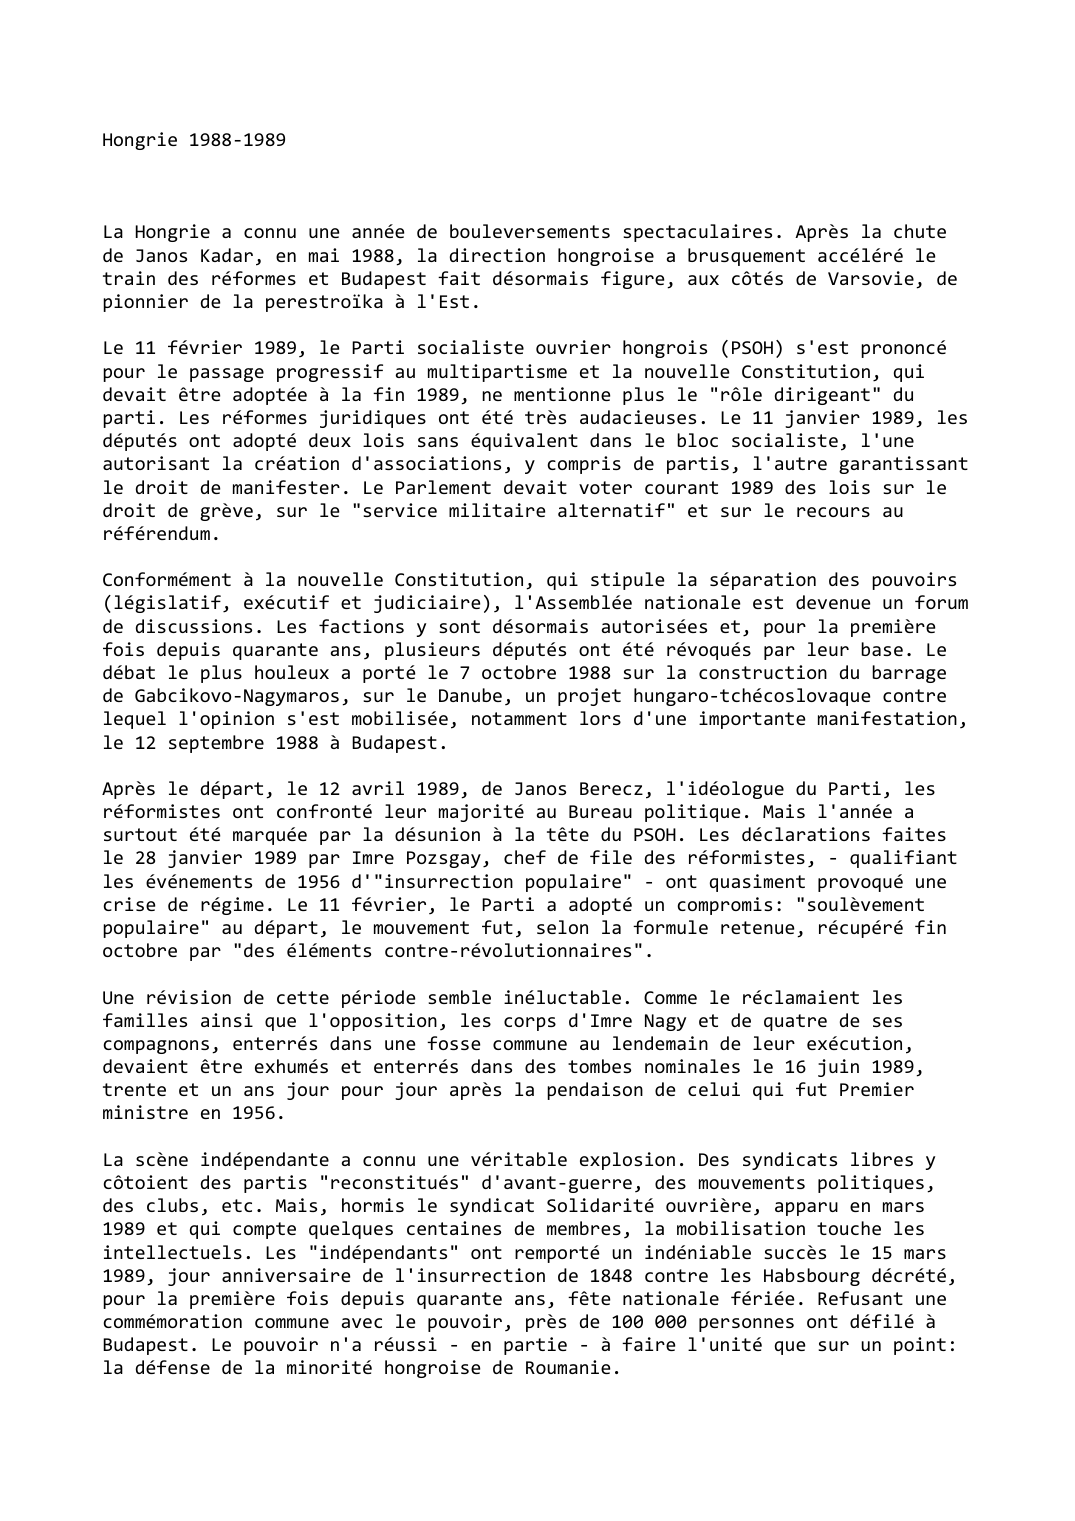 Prévisualisation du document Hongrie (1988-1989)